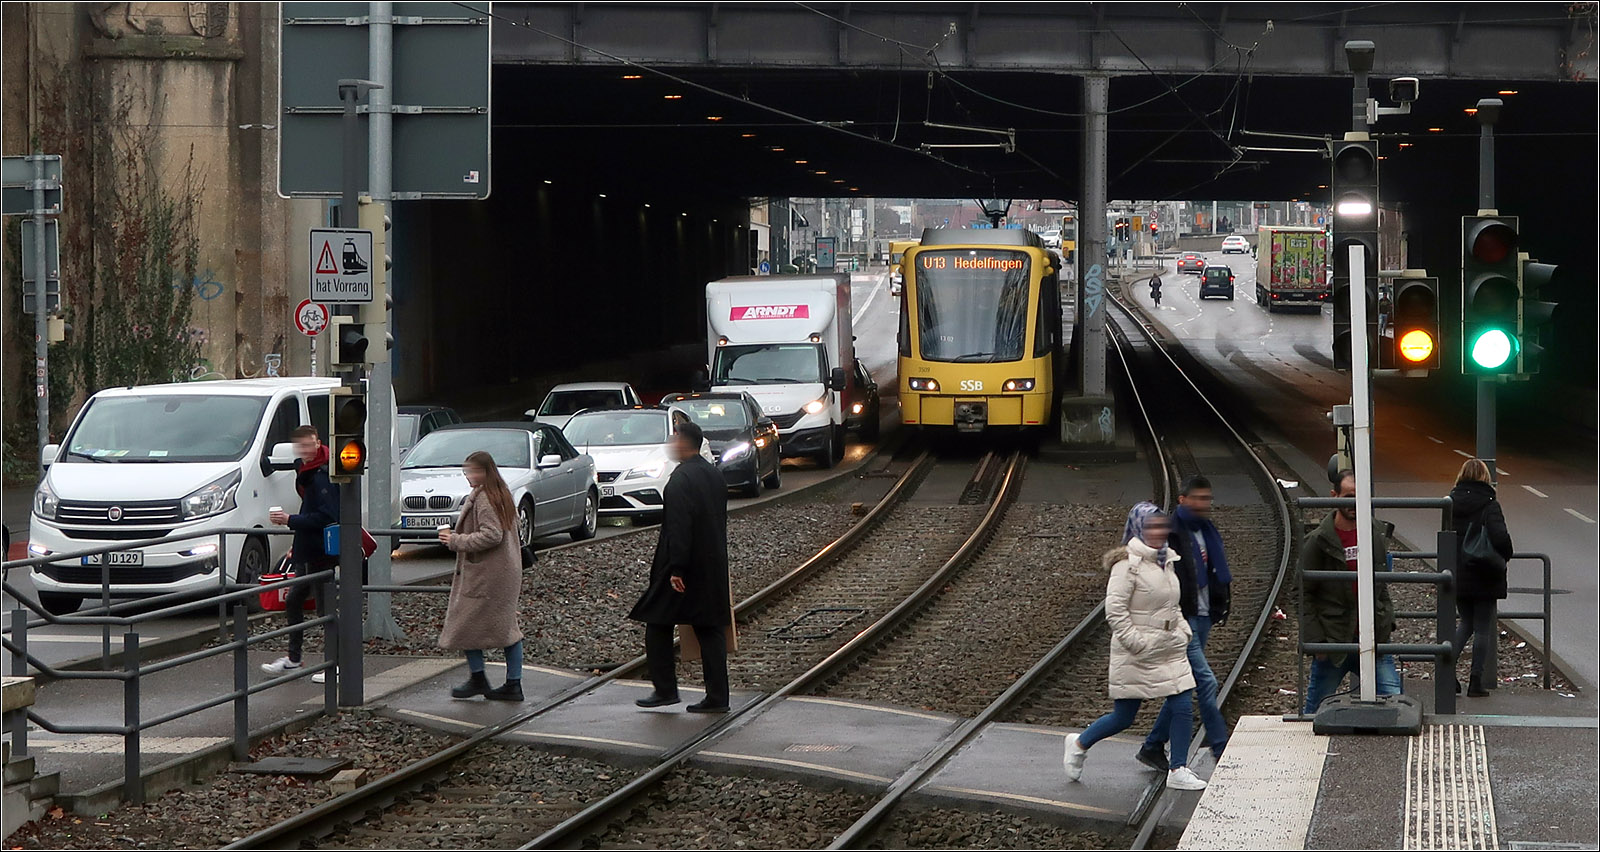 Durch die Bahnunterführung - 

Ein Stadtbahnzug der Linie U3 fährt langsam auf die noch durch einen anderen Zug belegte Haltestelle 'Bad Cannstatt Wilhelmsplatz' zu. Diese Haltestelle wird durch die Linien U1, U2, U13 und U19 bedient und bietet Umsteigemöglichkeiten zu den S-Bahnlinien S1, S2 und S3 sowie zu verschiedenen Metropolexpresslinien.
In der Regel sind die Fußgängerüberwege über die Stadtbahngleise Z-förmig angelegt, damit der Blick der Fußgänger automatisch jeweils in Richtung der Bahnen der jeweiligen Richtung gelenkt wird.

23.02.2023 (M)